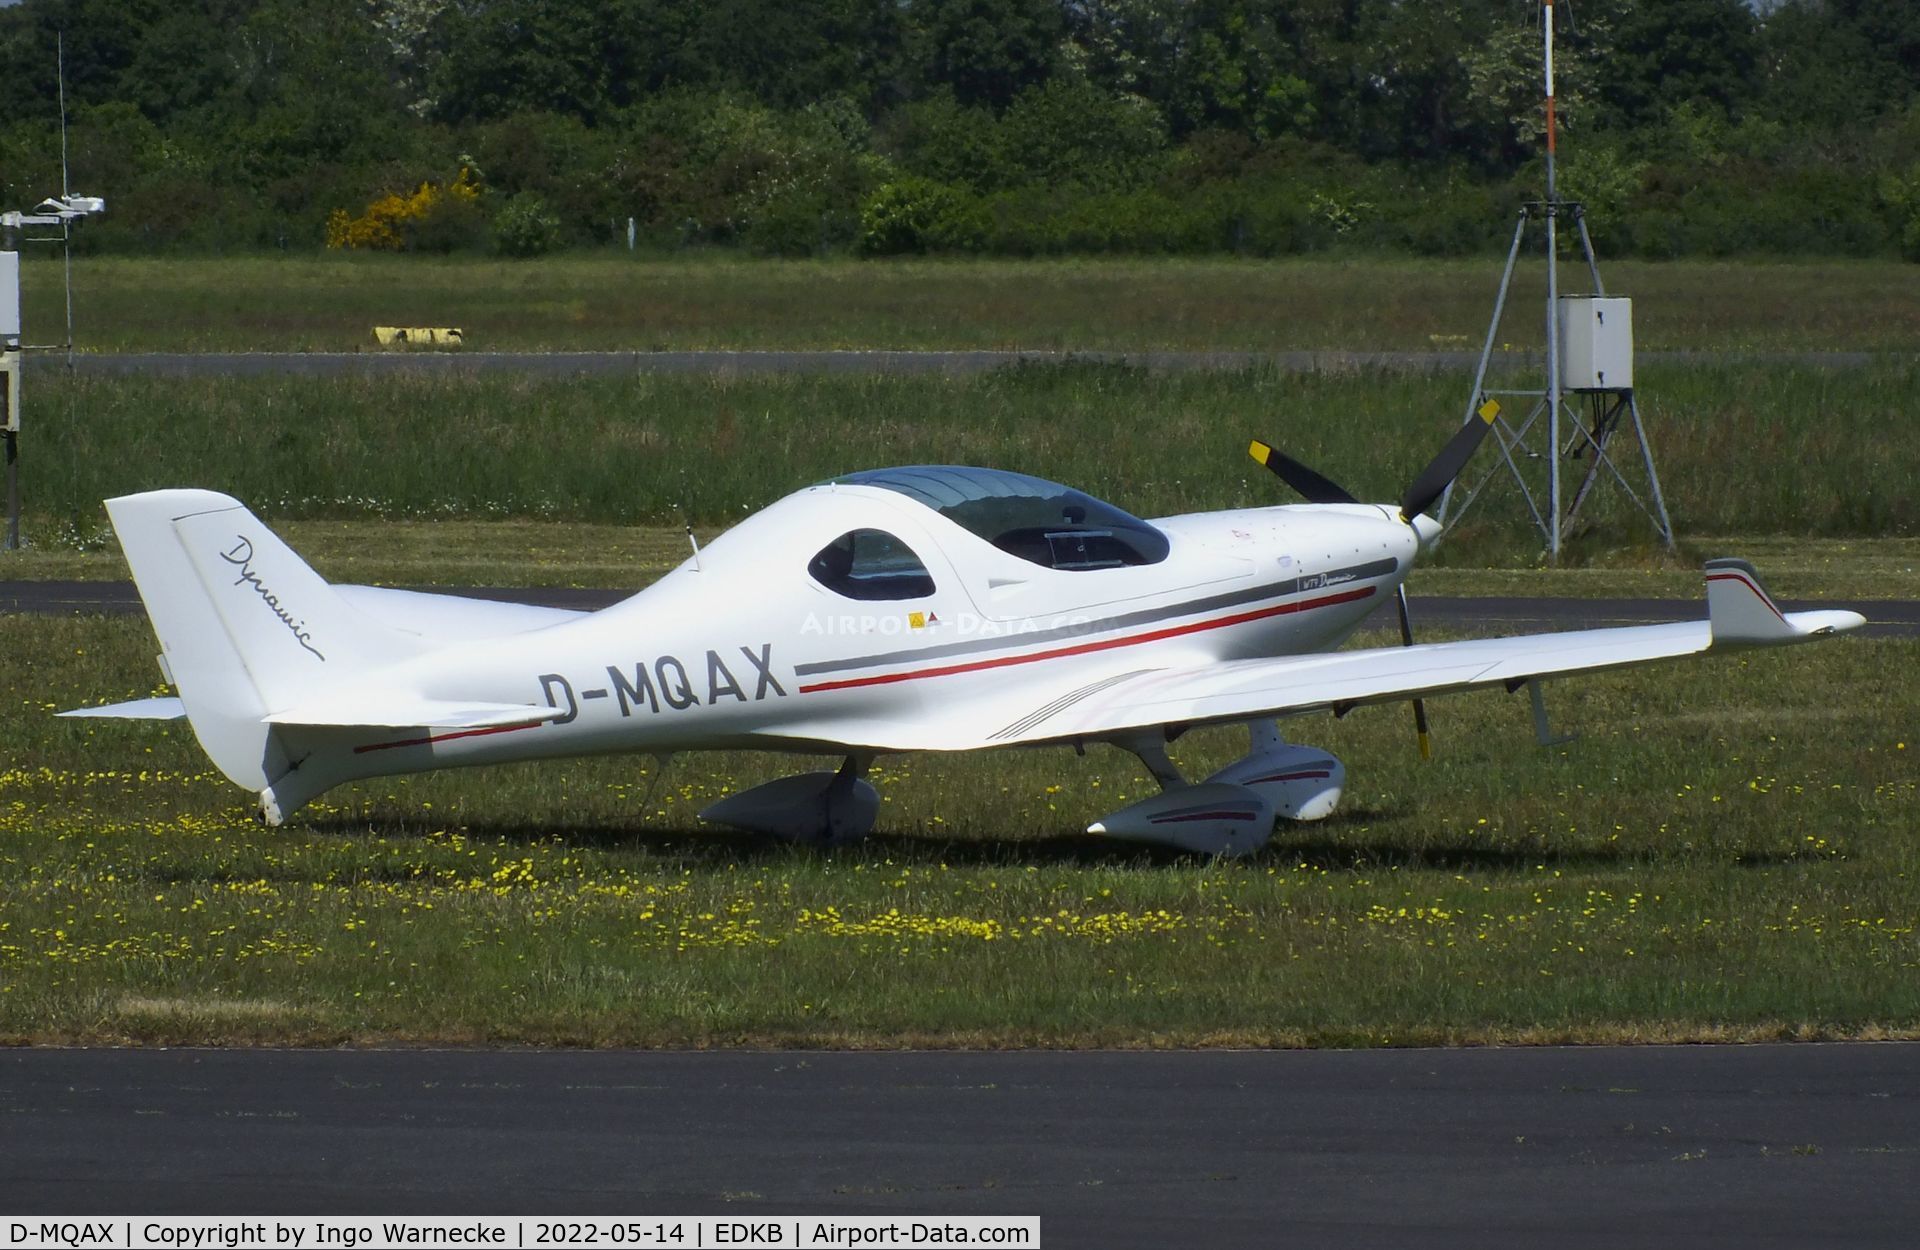 D-MQAX, Aerospool WT-9 Dynamic C/N not found_D_MQAX, Aerospool WT-9 Dynamic at Bonn-Hangelar airfield '2205-06